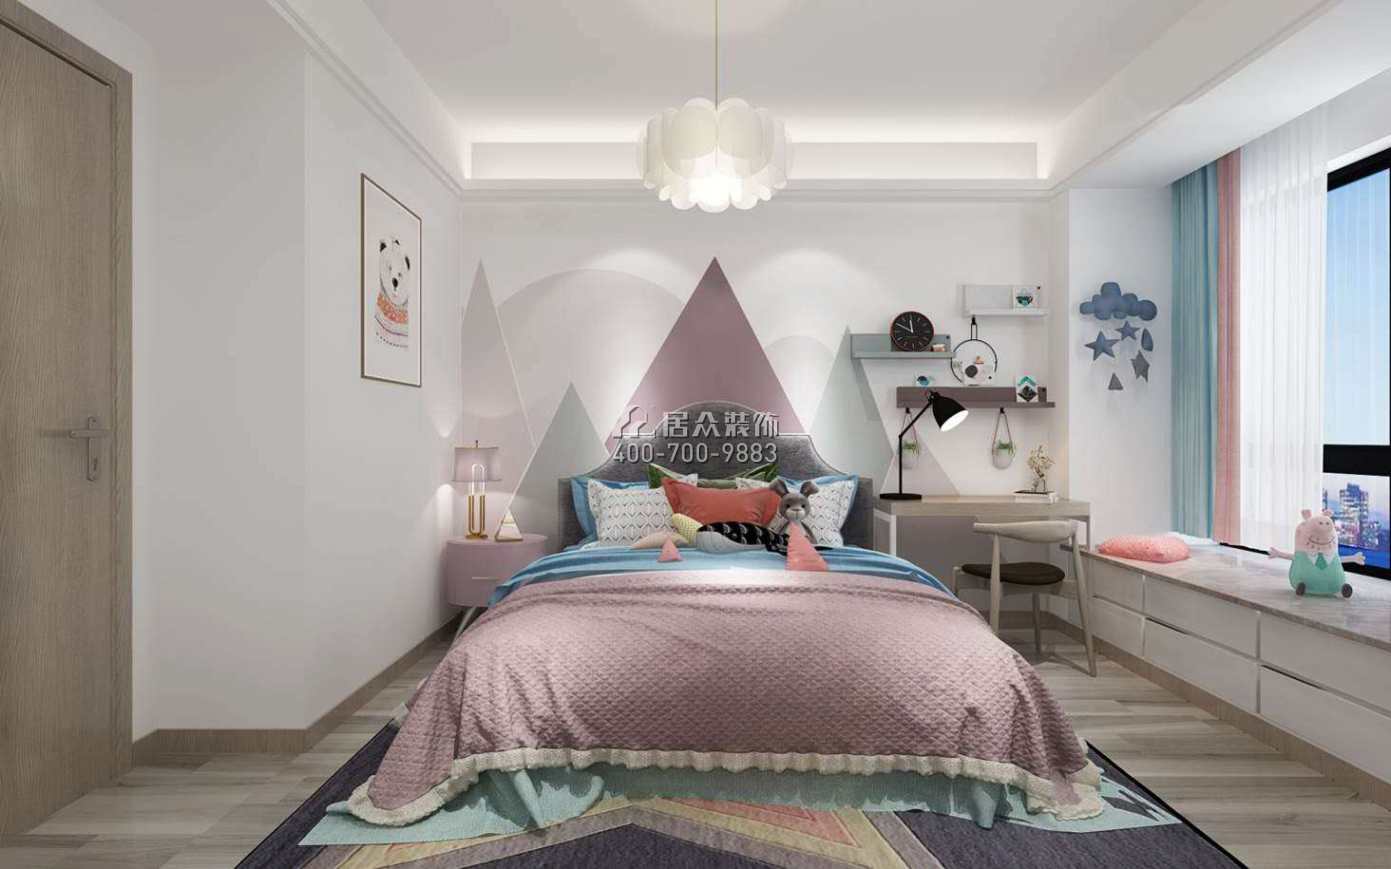 老西门155平方米北欧风格平层户型卧室装修效果图